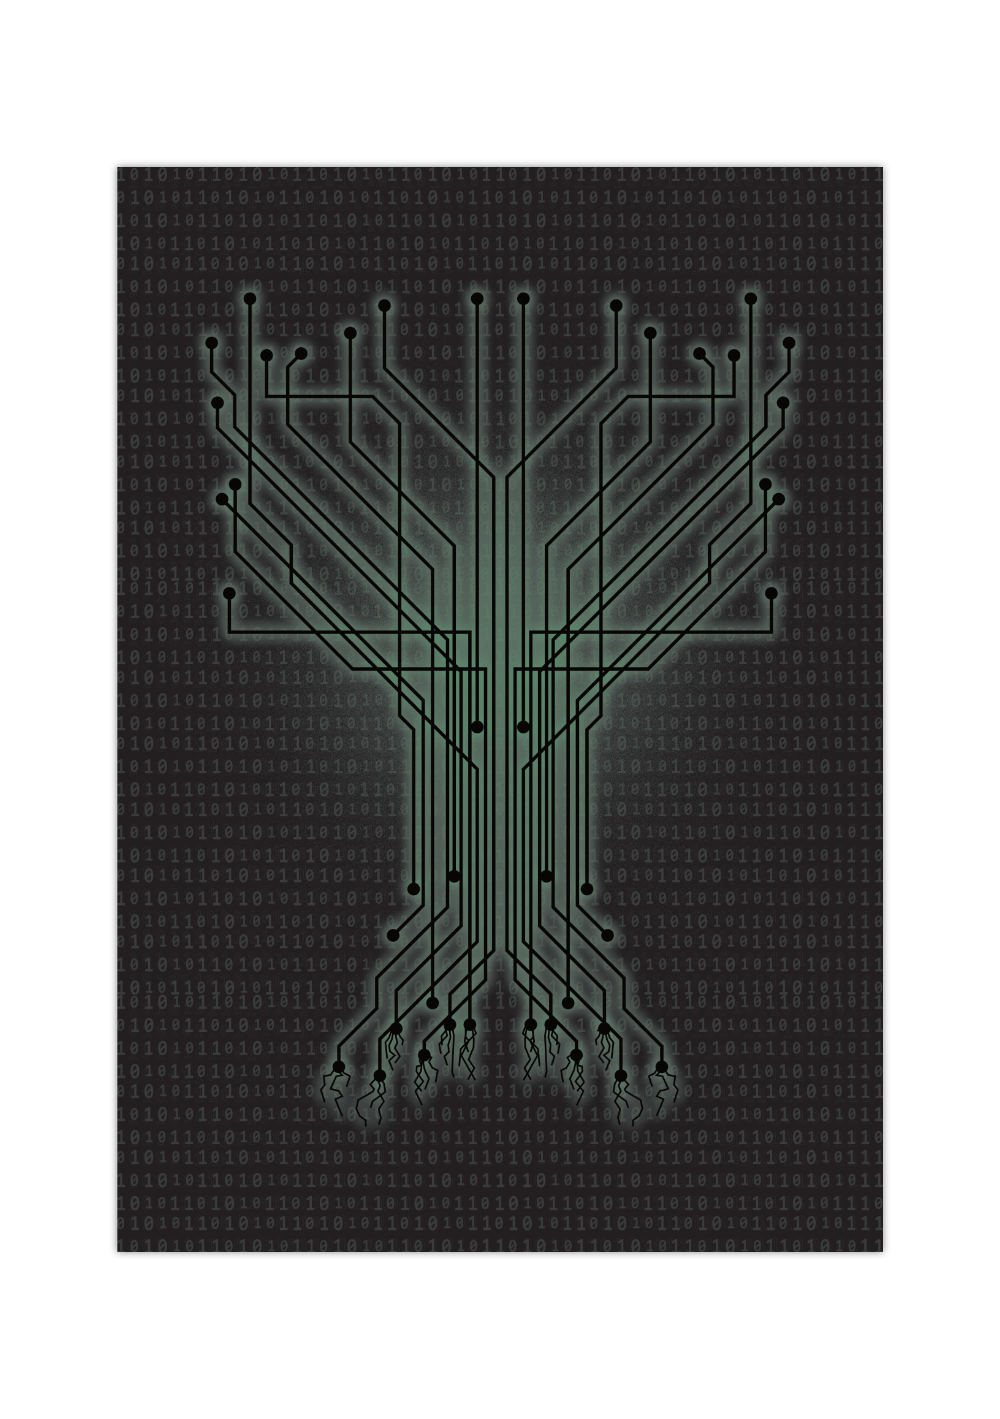 Das Computer-Poster zeigt einen Datenbaum mit hinterlegtem Binärcode